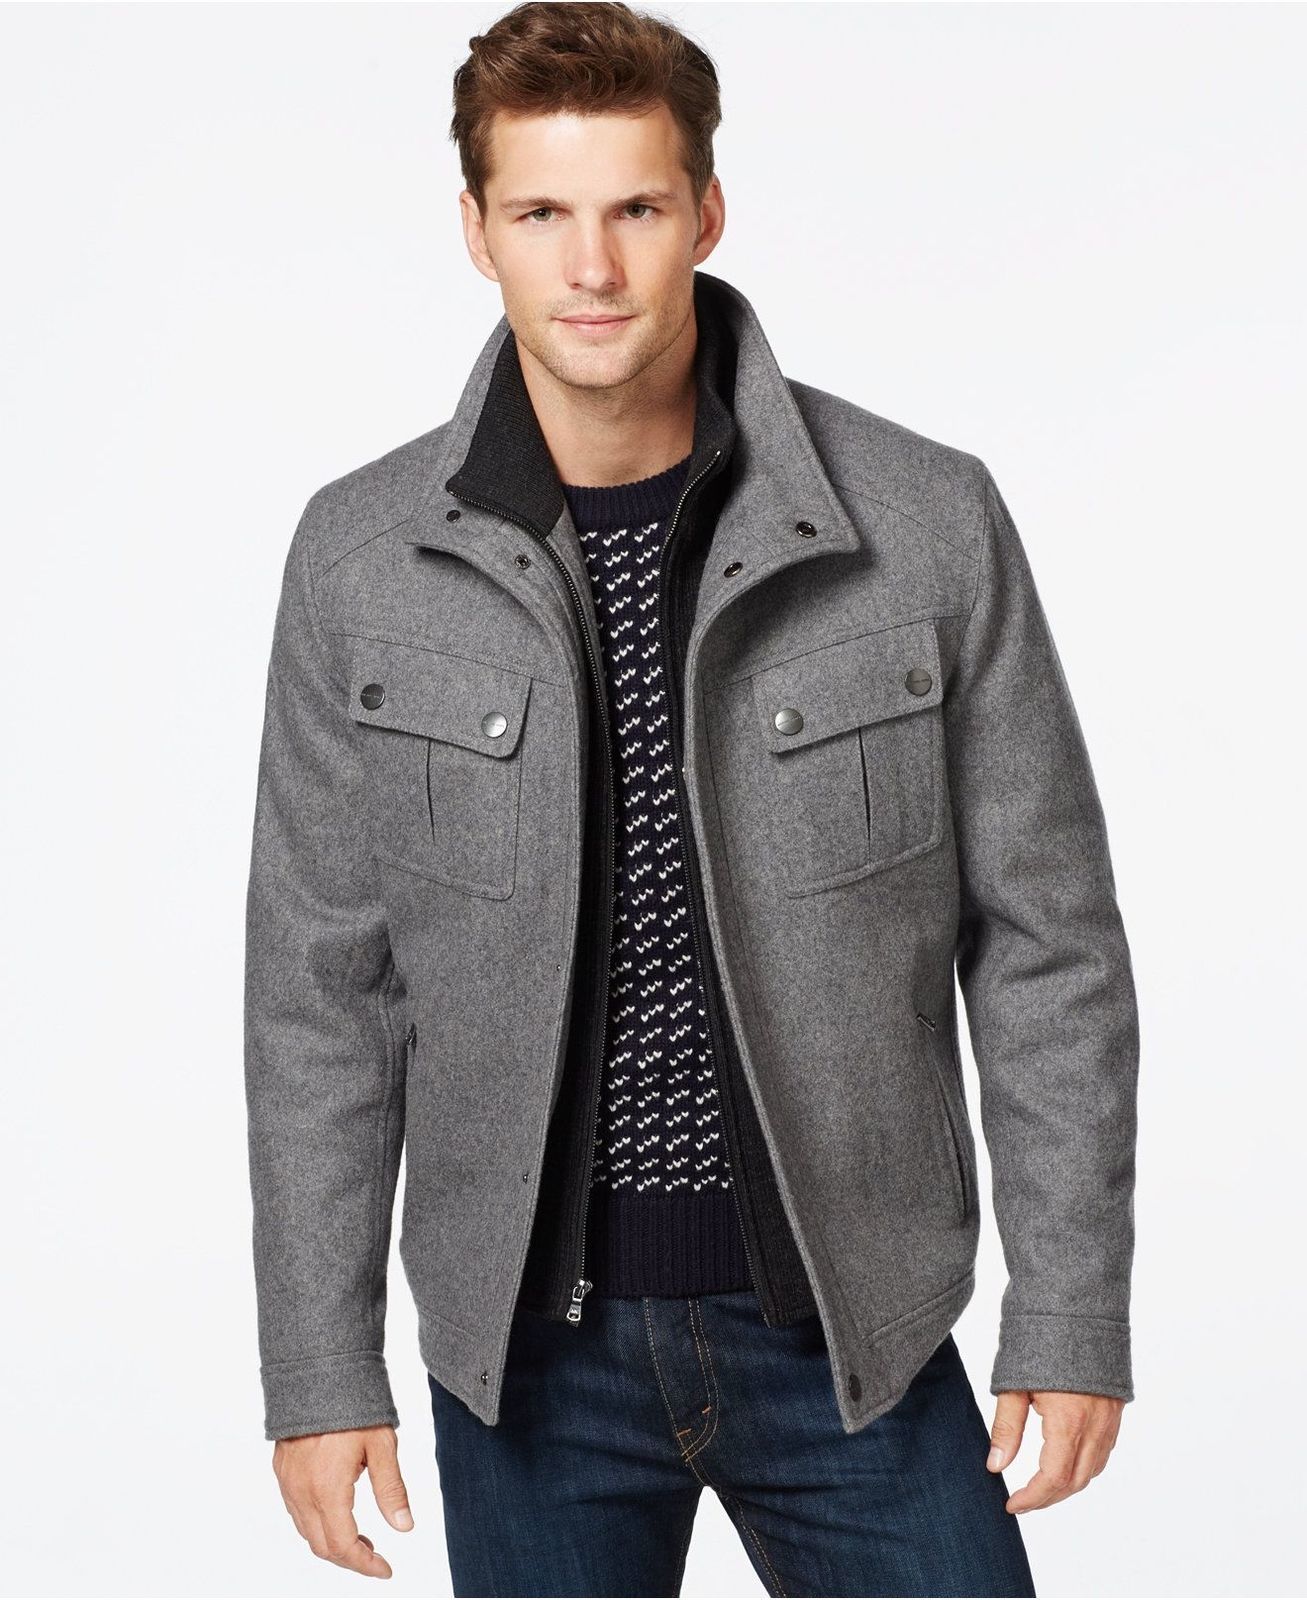 Michael Kors Men's Gray Big & Tall Brockton Wool-Blend Jacket, Size 2XT ...